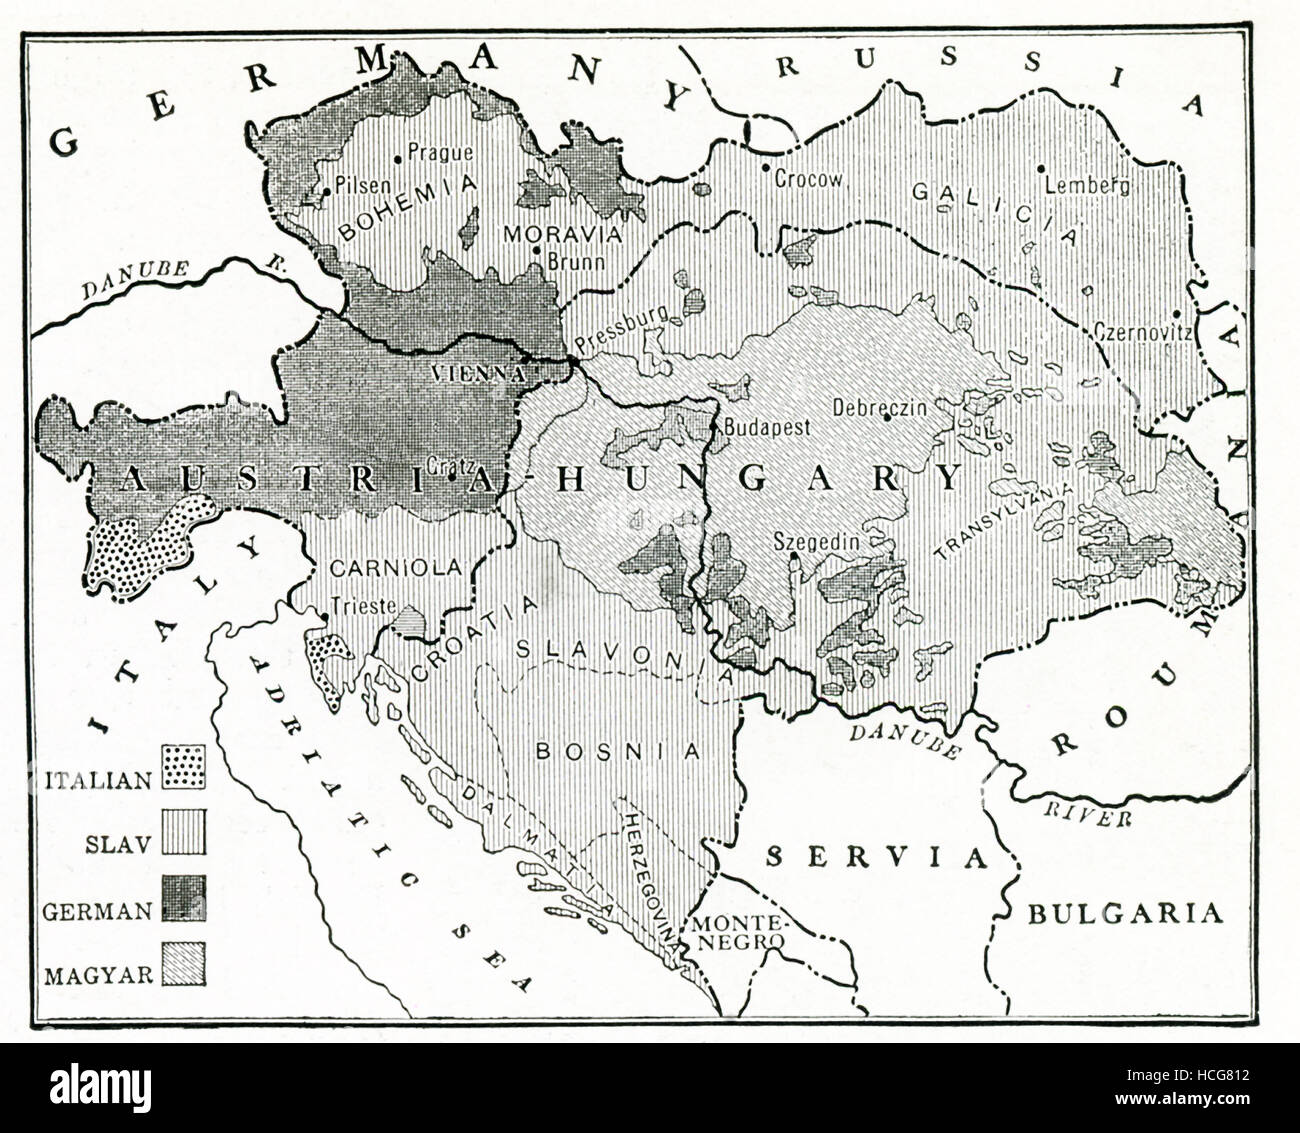 Diese Karte stammt aus der Zeit des ersten Weltkrieges, 1917, und zeigt die kompliziertere rassische Verteilung (Italienisch, slawisch, Deutsch und Magyar) in der österreichisch-ungarischen Monarchie. Stockfoto